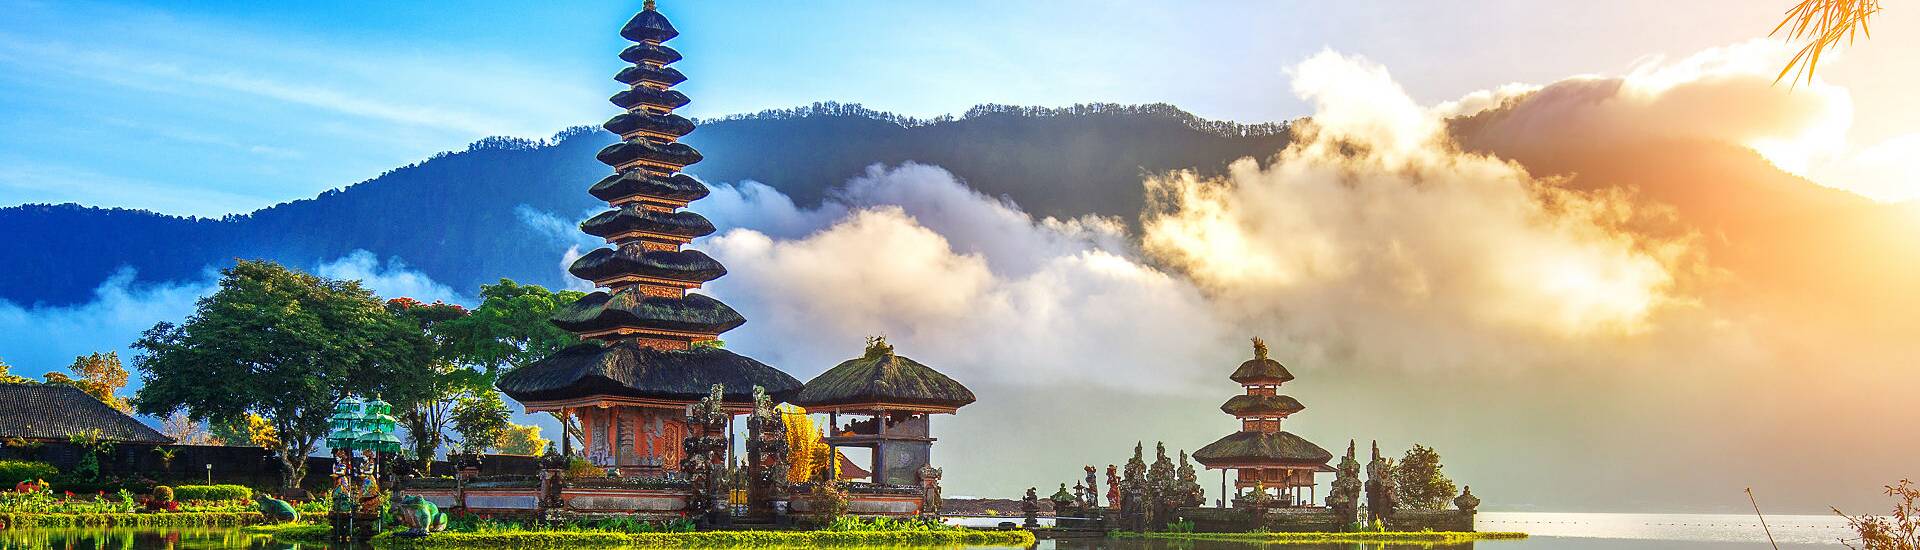 Bild von Pura Ulun Danu Bratan auf Bali, ein faszinierender Wassertempel inmitten atemberaubender Natur. Planen Sie Ihre Bali Reise und entdecken Sie dieses magische Reiseziel im Urlaub.